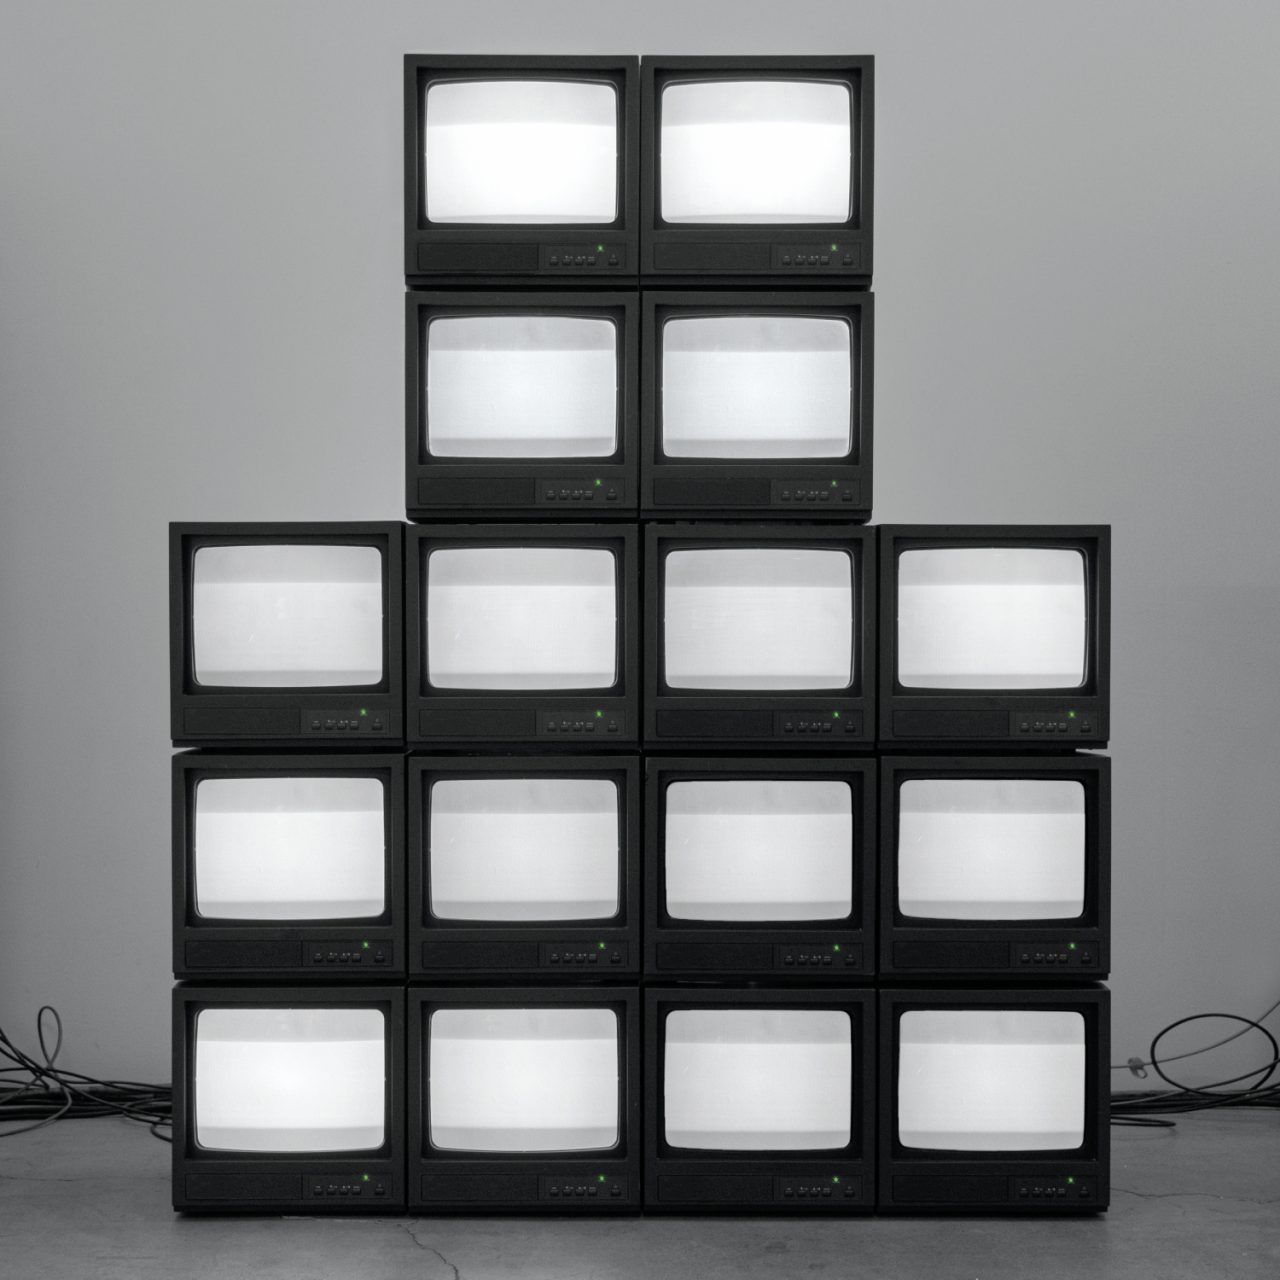 Auf dem Albumcover "Nowhere Generation" von Rise Against sieht man eine Pyramide aus alten Fernsehern vor einer grauen Wand.